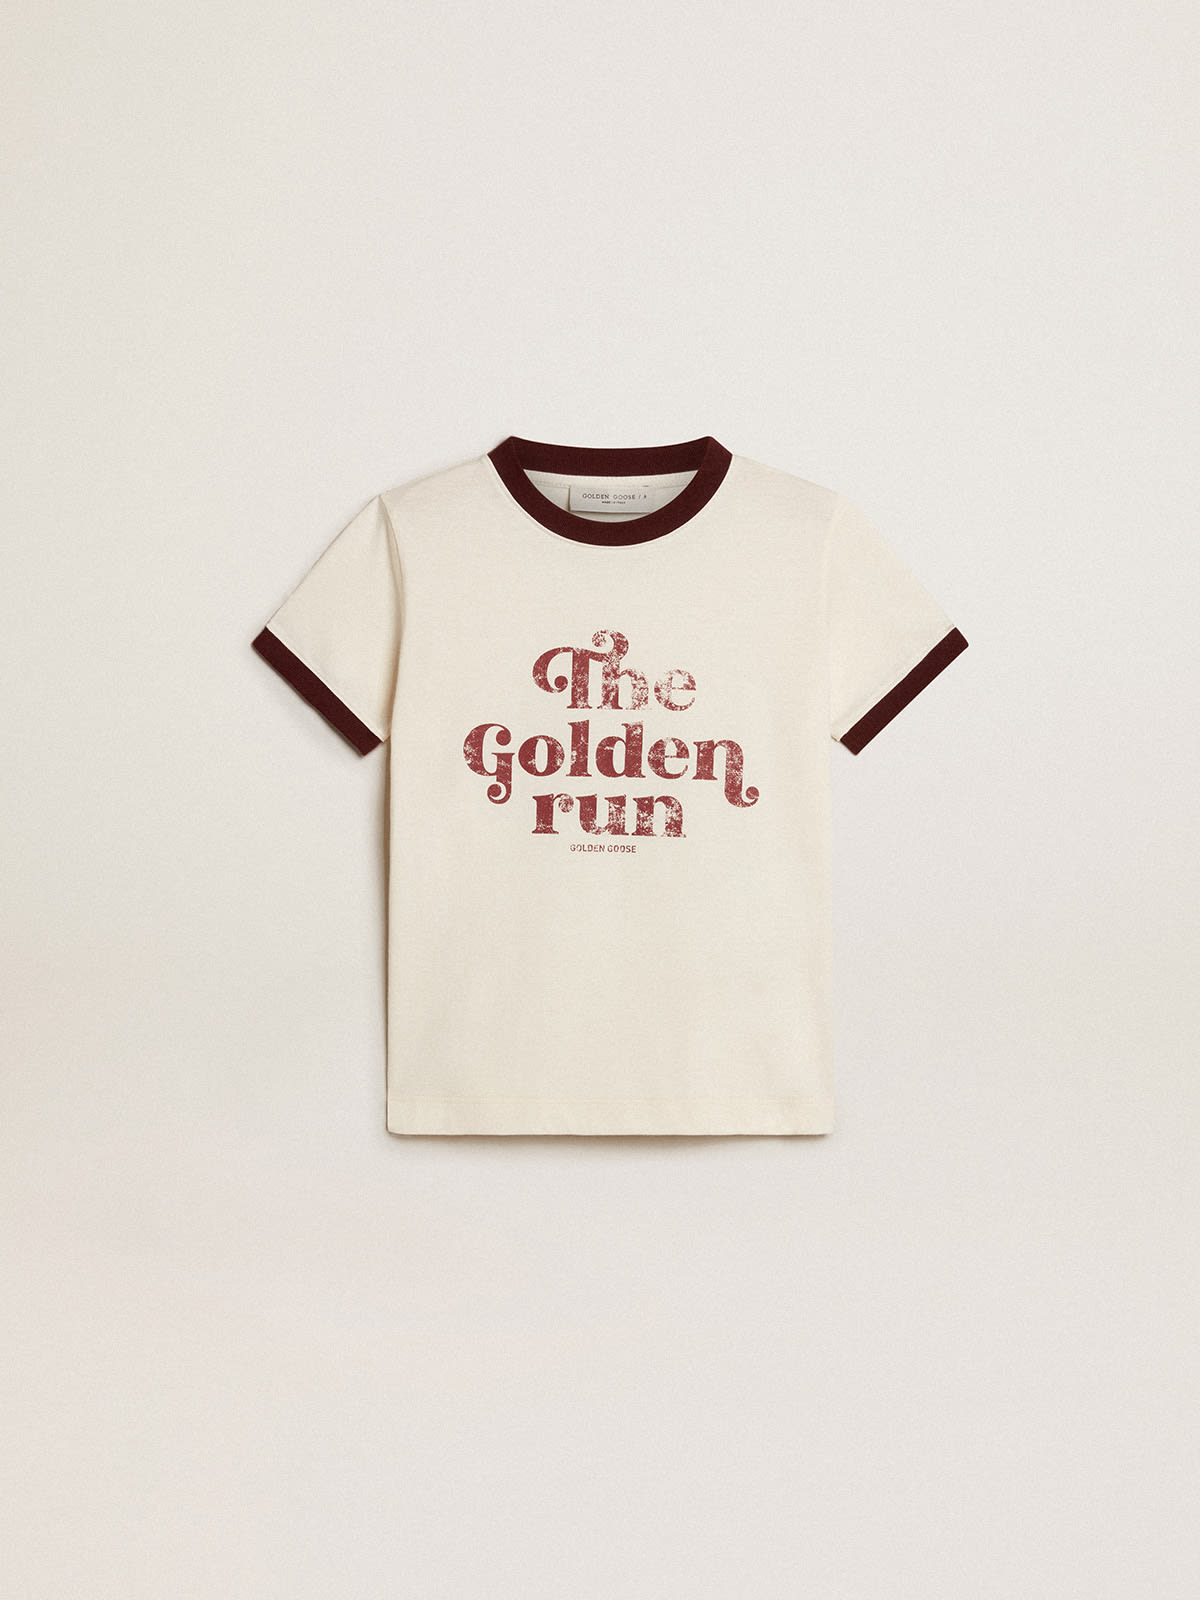 Golden Goose - Camiseta infantil masculina de algodão branco com estampa desbotada no centro in 